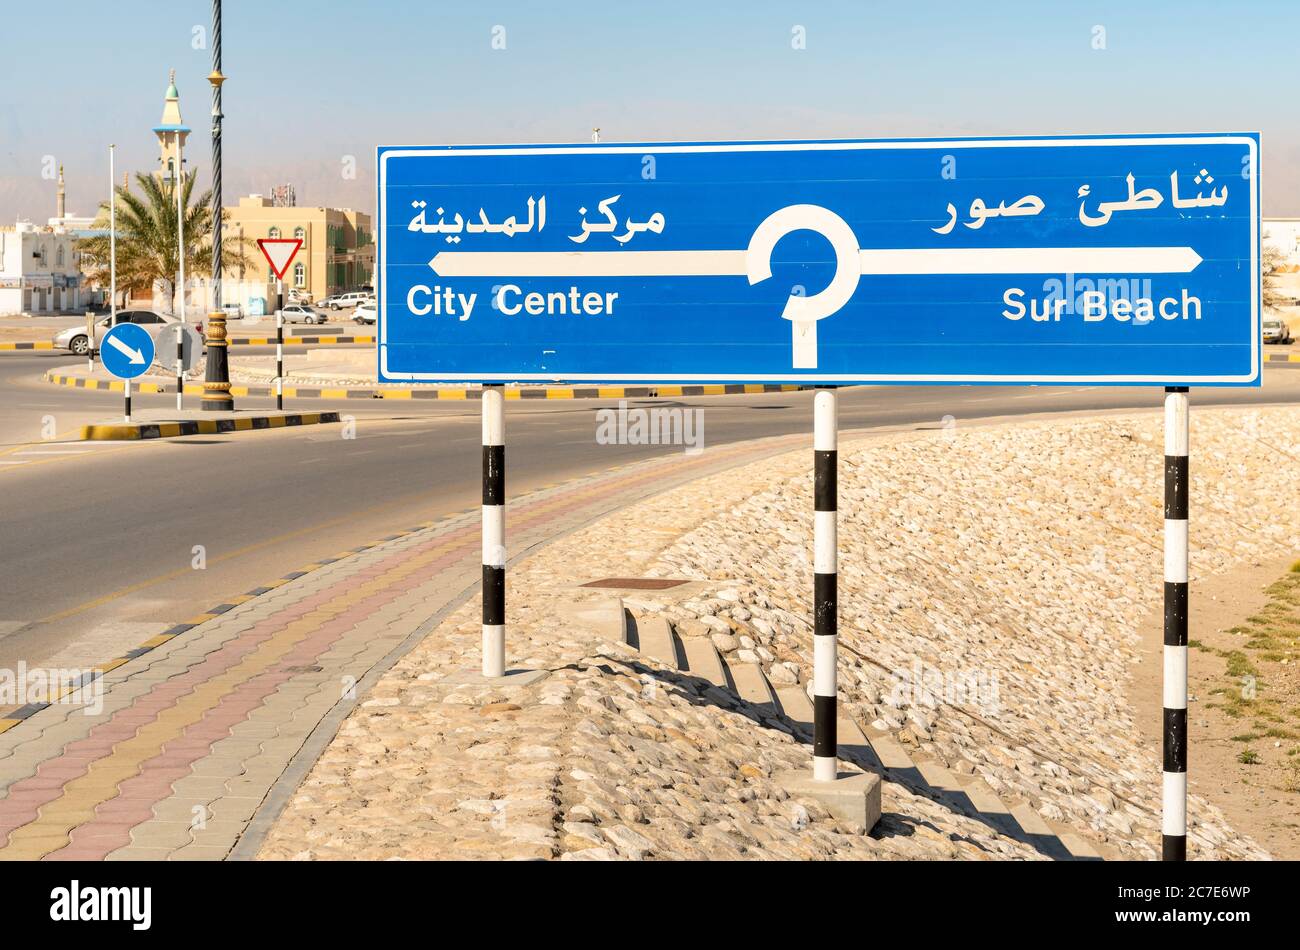 Panneau indiquant le centre-ville et la plage sur la route de sur, Sultanat d'Oman. Banque D'Images